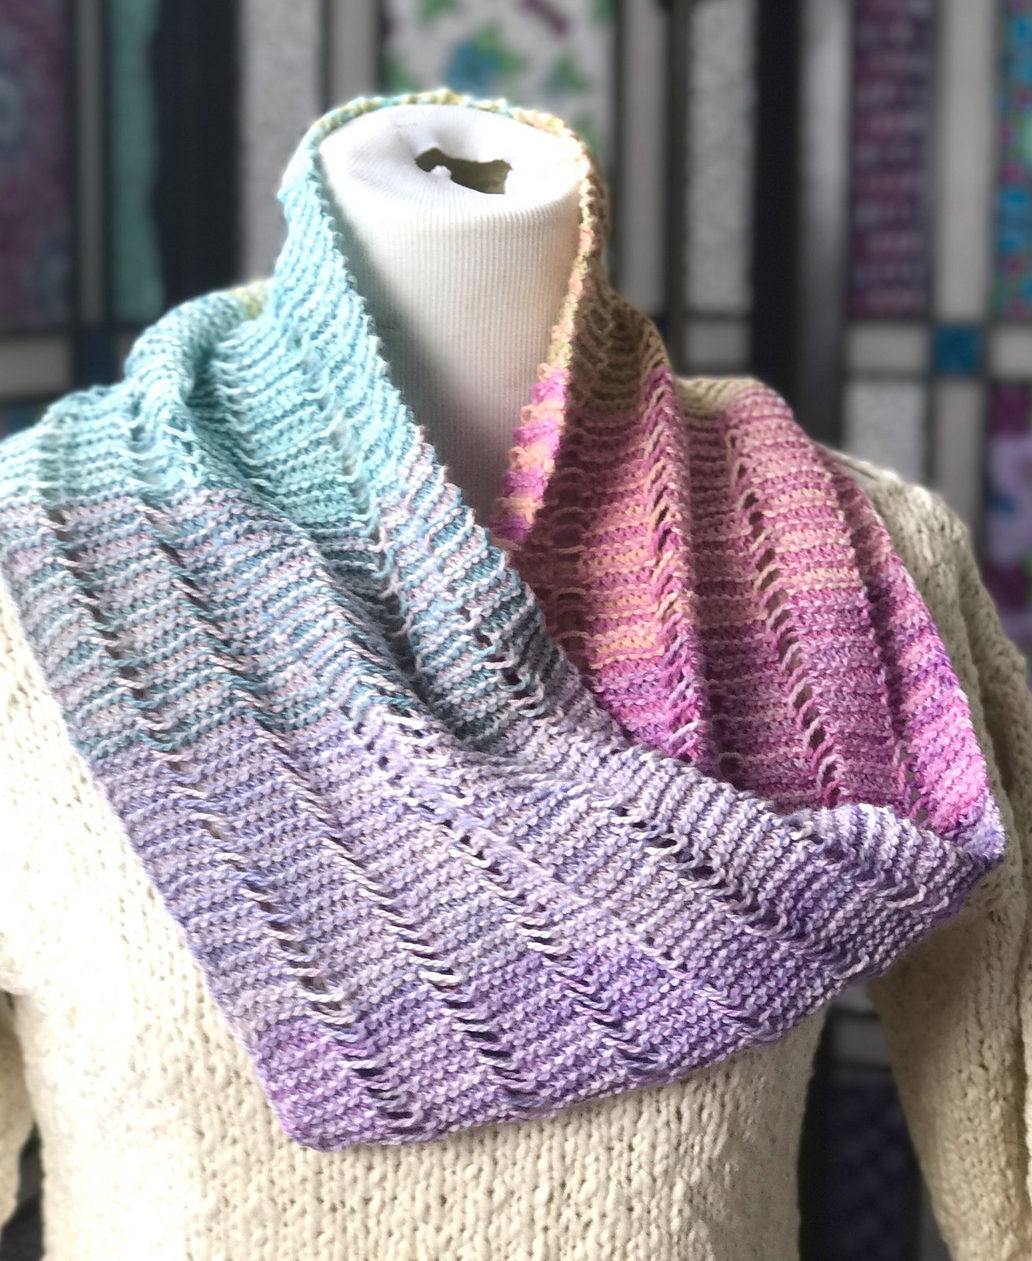 Free Knitting Pattern for Serene Sampler Cowl